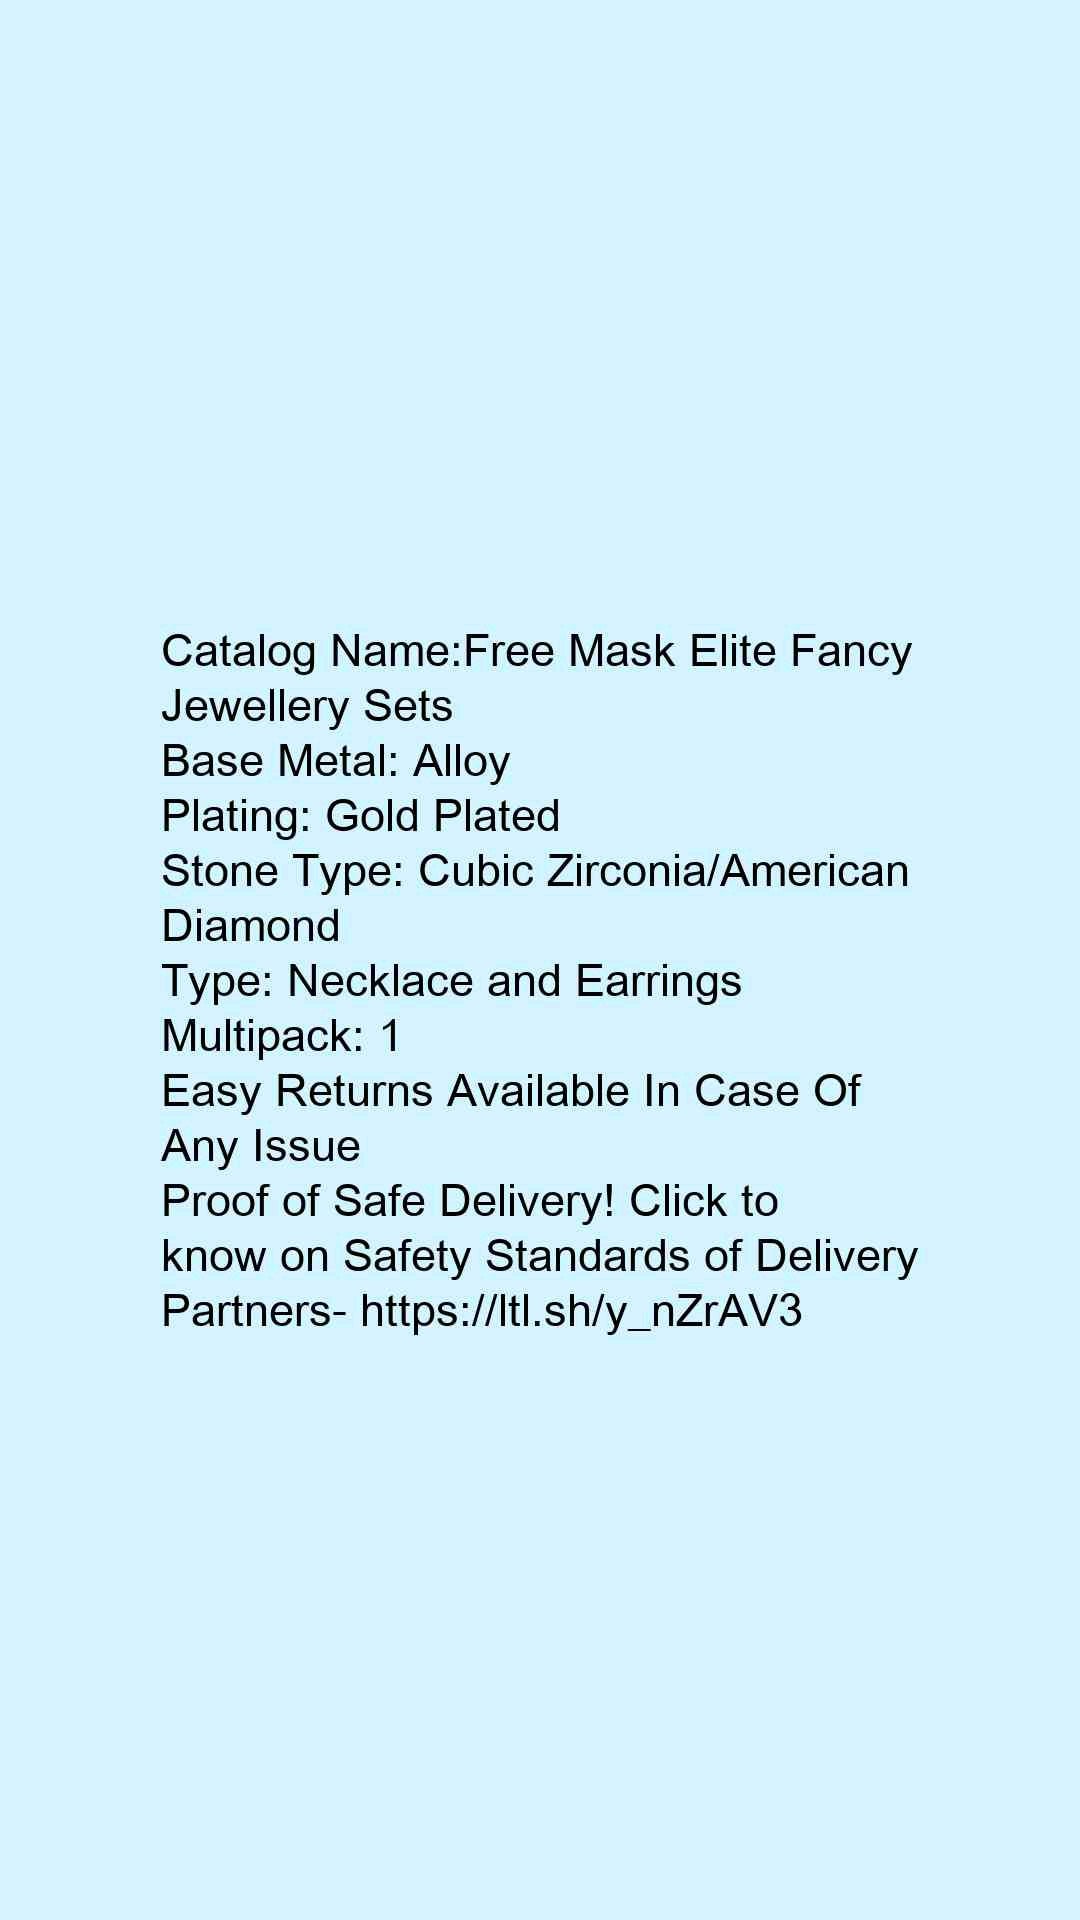 Free Mask Elite Fancy Jewellery Sets - Faritha